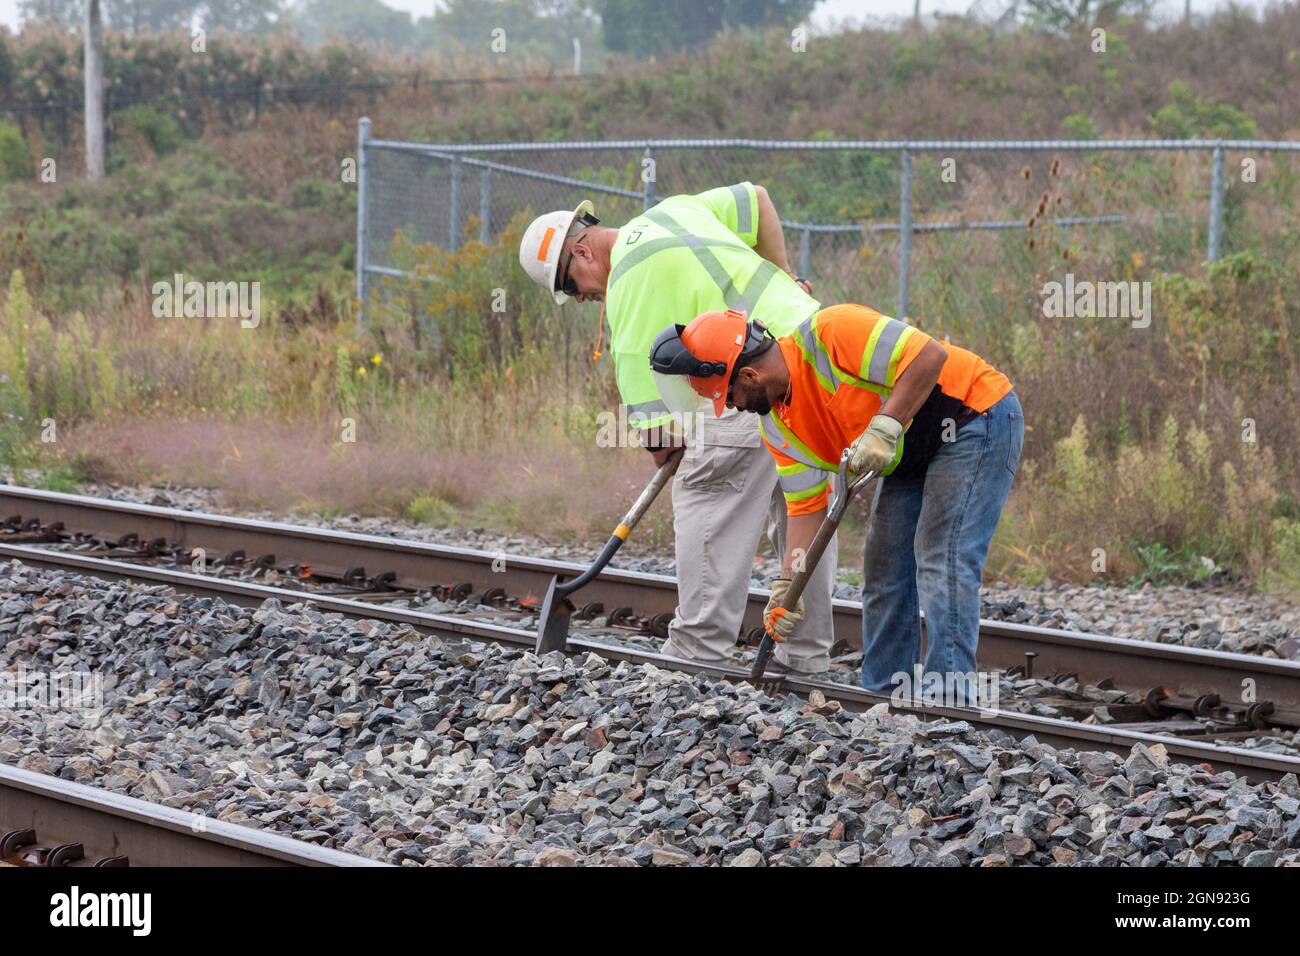 Pontiac, Michigan - Un equipaggio di manutenzione ferroviaria lavora sui binari della CN Railroad, pulendo i detriti per prepararsi alle riparazioni dei binari. Foto Stock